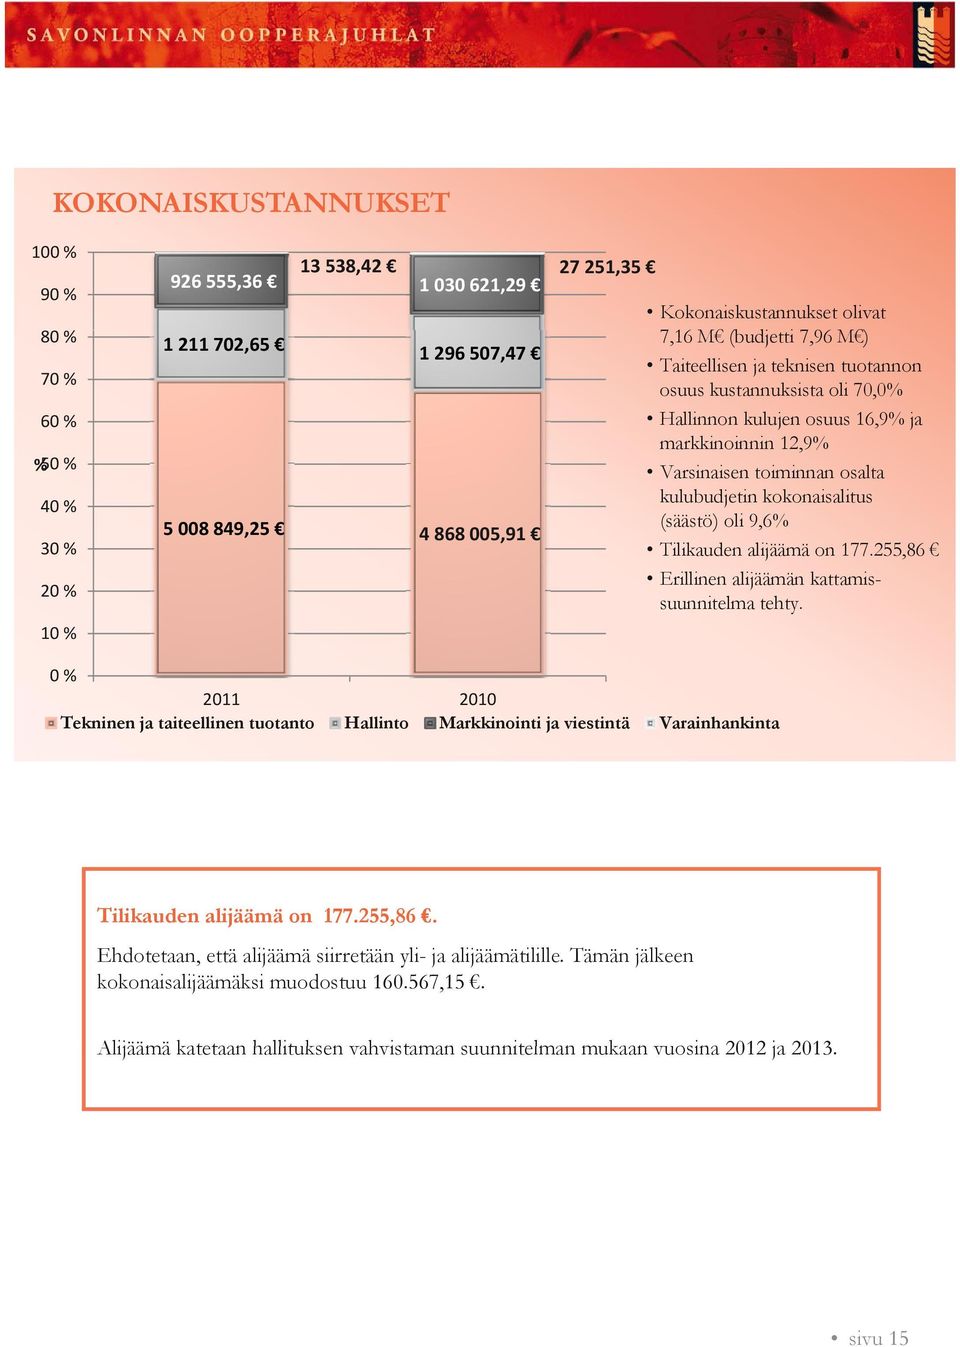 868 005,91 (säästö) oli 9,6% Tilikauden alijäämä on 177.255,86 Erillinen alijäämän kattamissuunnitelma tehty.